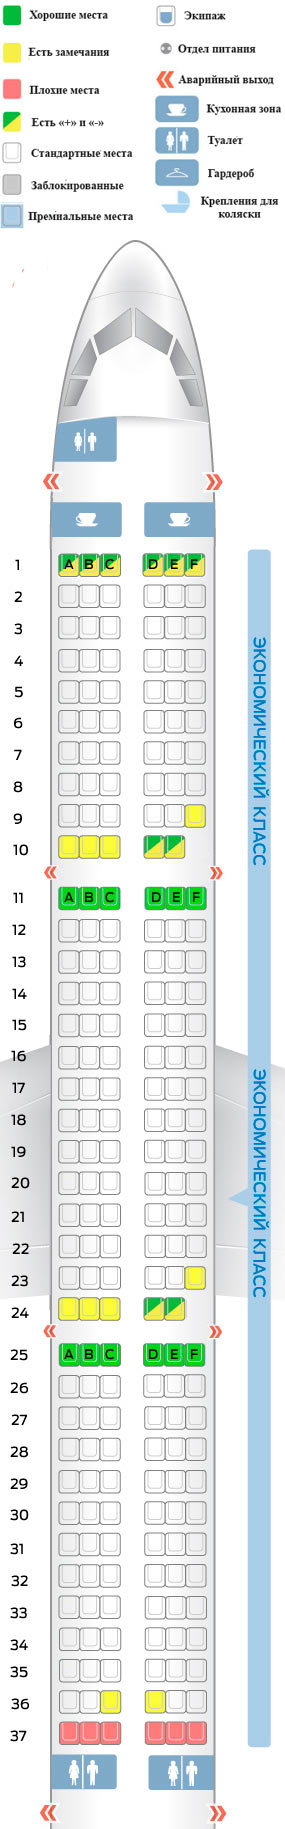 Airbus A321: схема салона и лучшие места